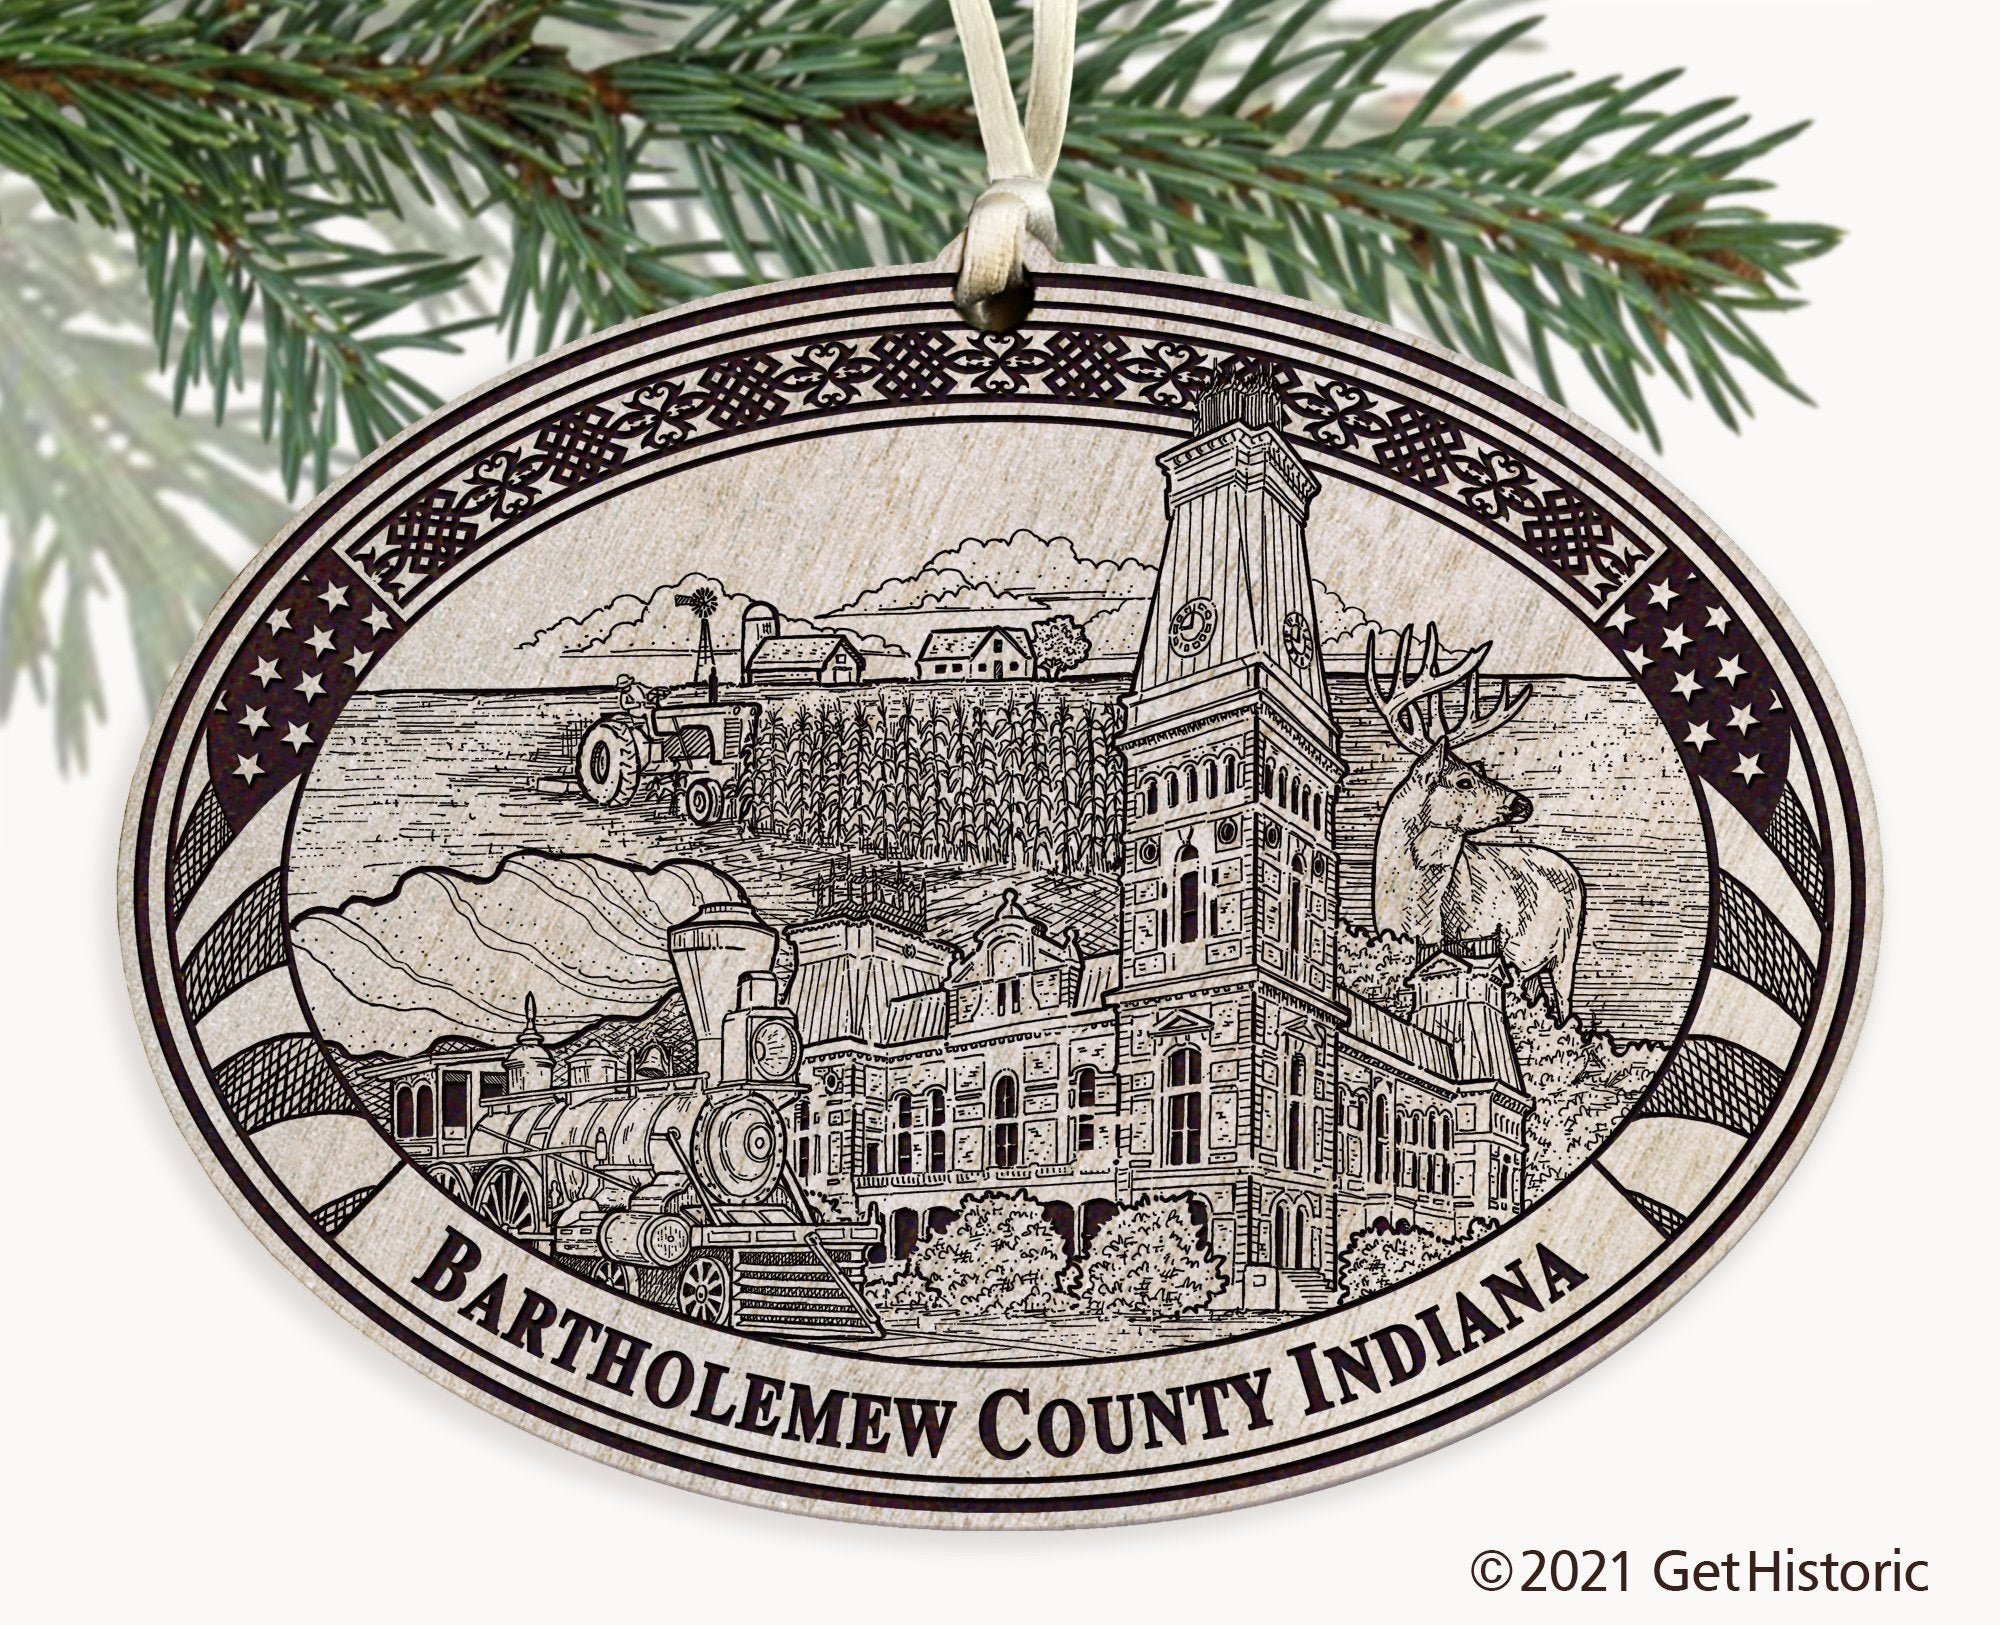 Bartholomew County Indiana Engraved Ornament